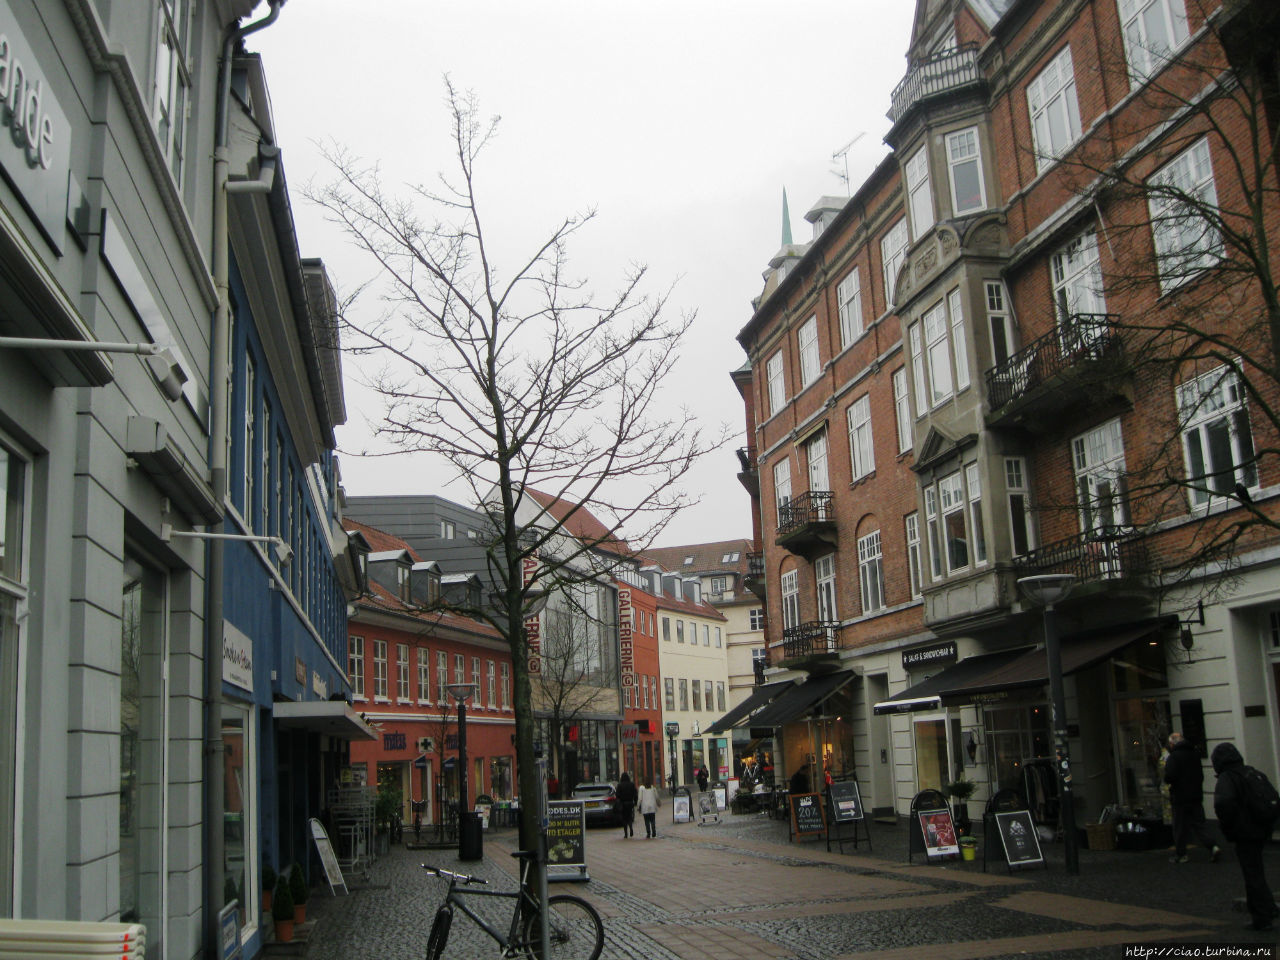 Главная пешеходная торговая улица. Хиллерёд, Дания